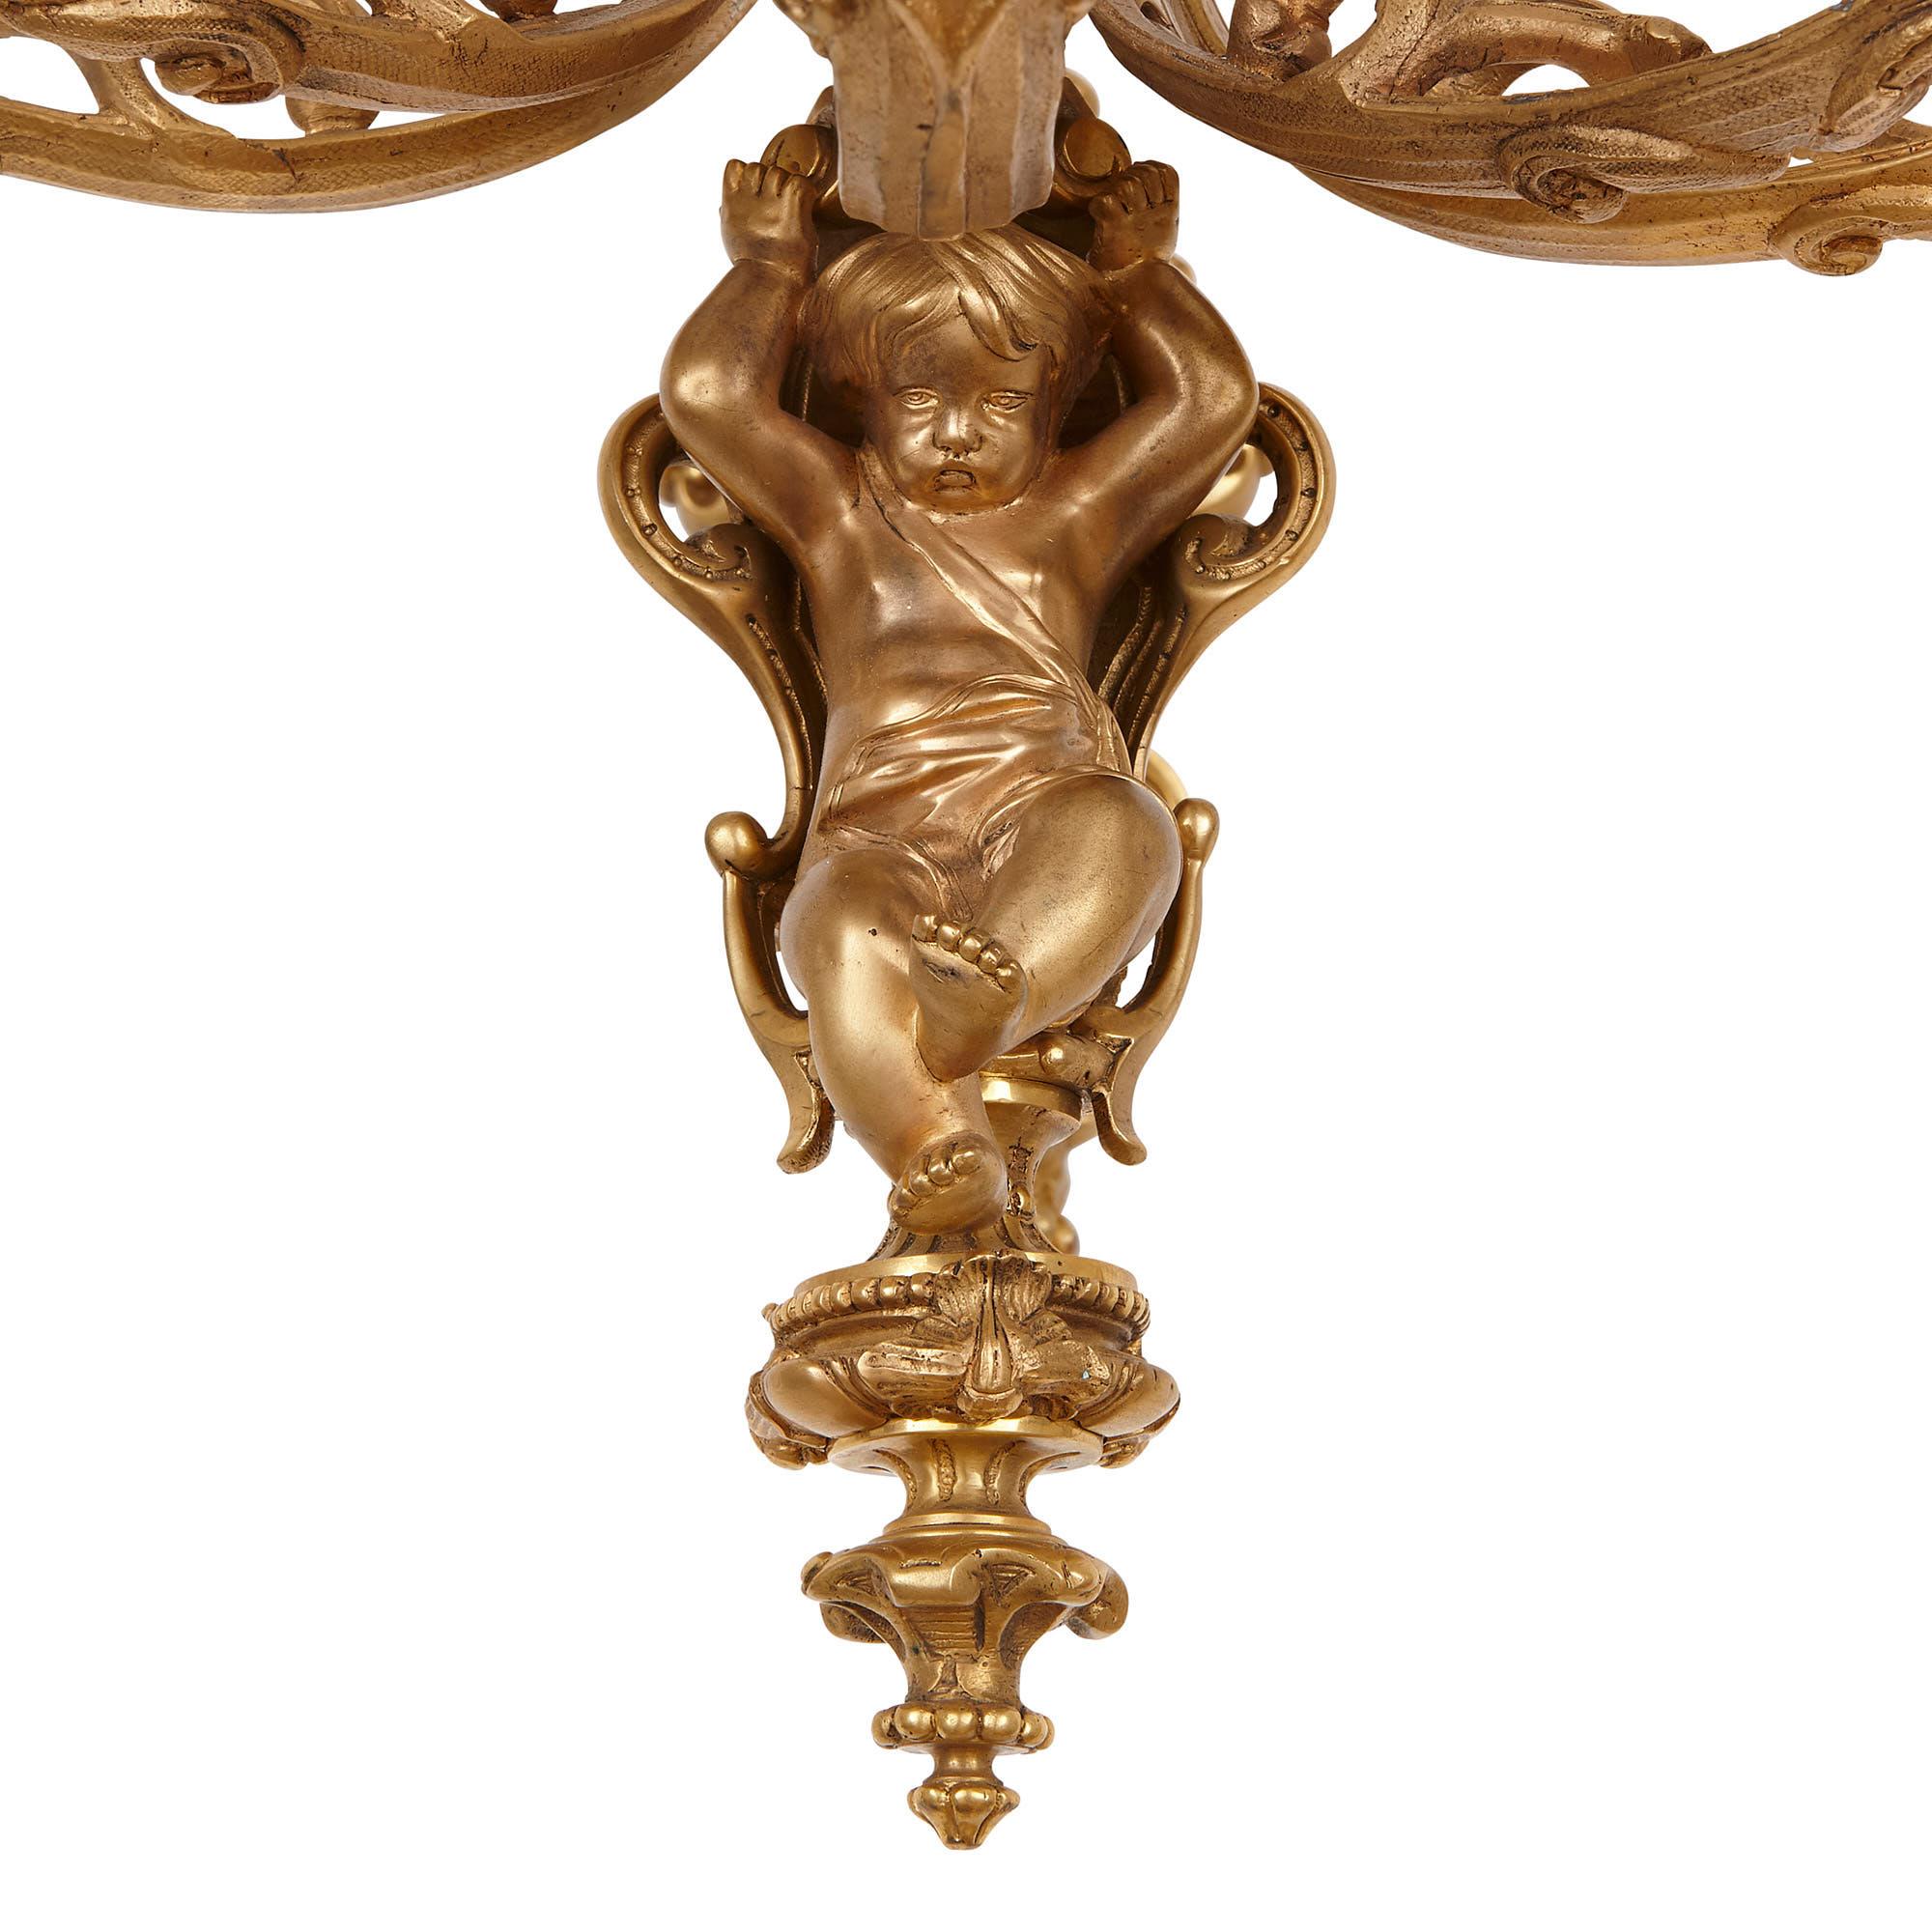 Dieses Paar vergoldeter Bronzeskulpturen (oder Wandleuchten) ist im Stil des Rokoko gestaltet und besteht aus schönen, von der Natur inspirierten, geschwungenen Formen. 

Die sechs Arme jeder Leuchte entspringen einer Rückenplatte, die mit